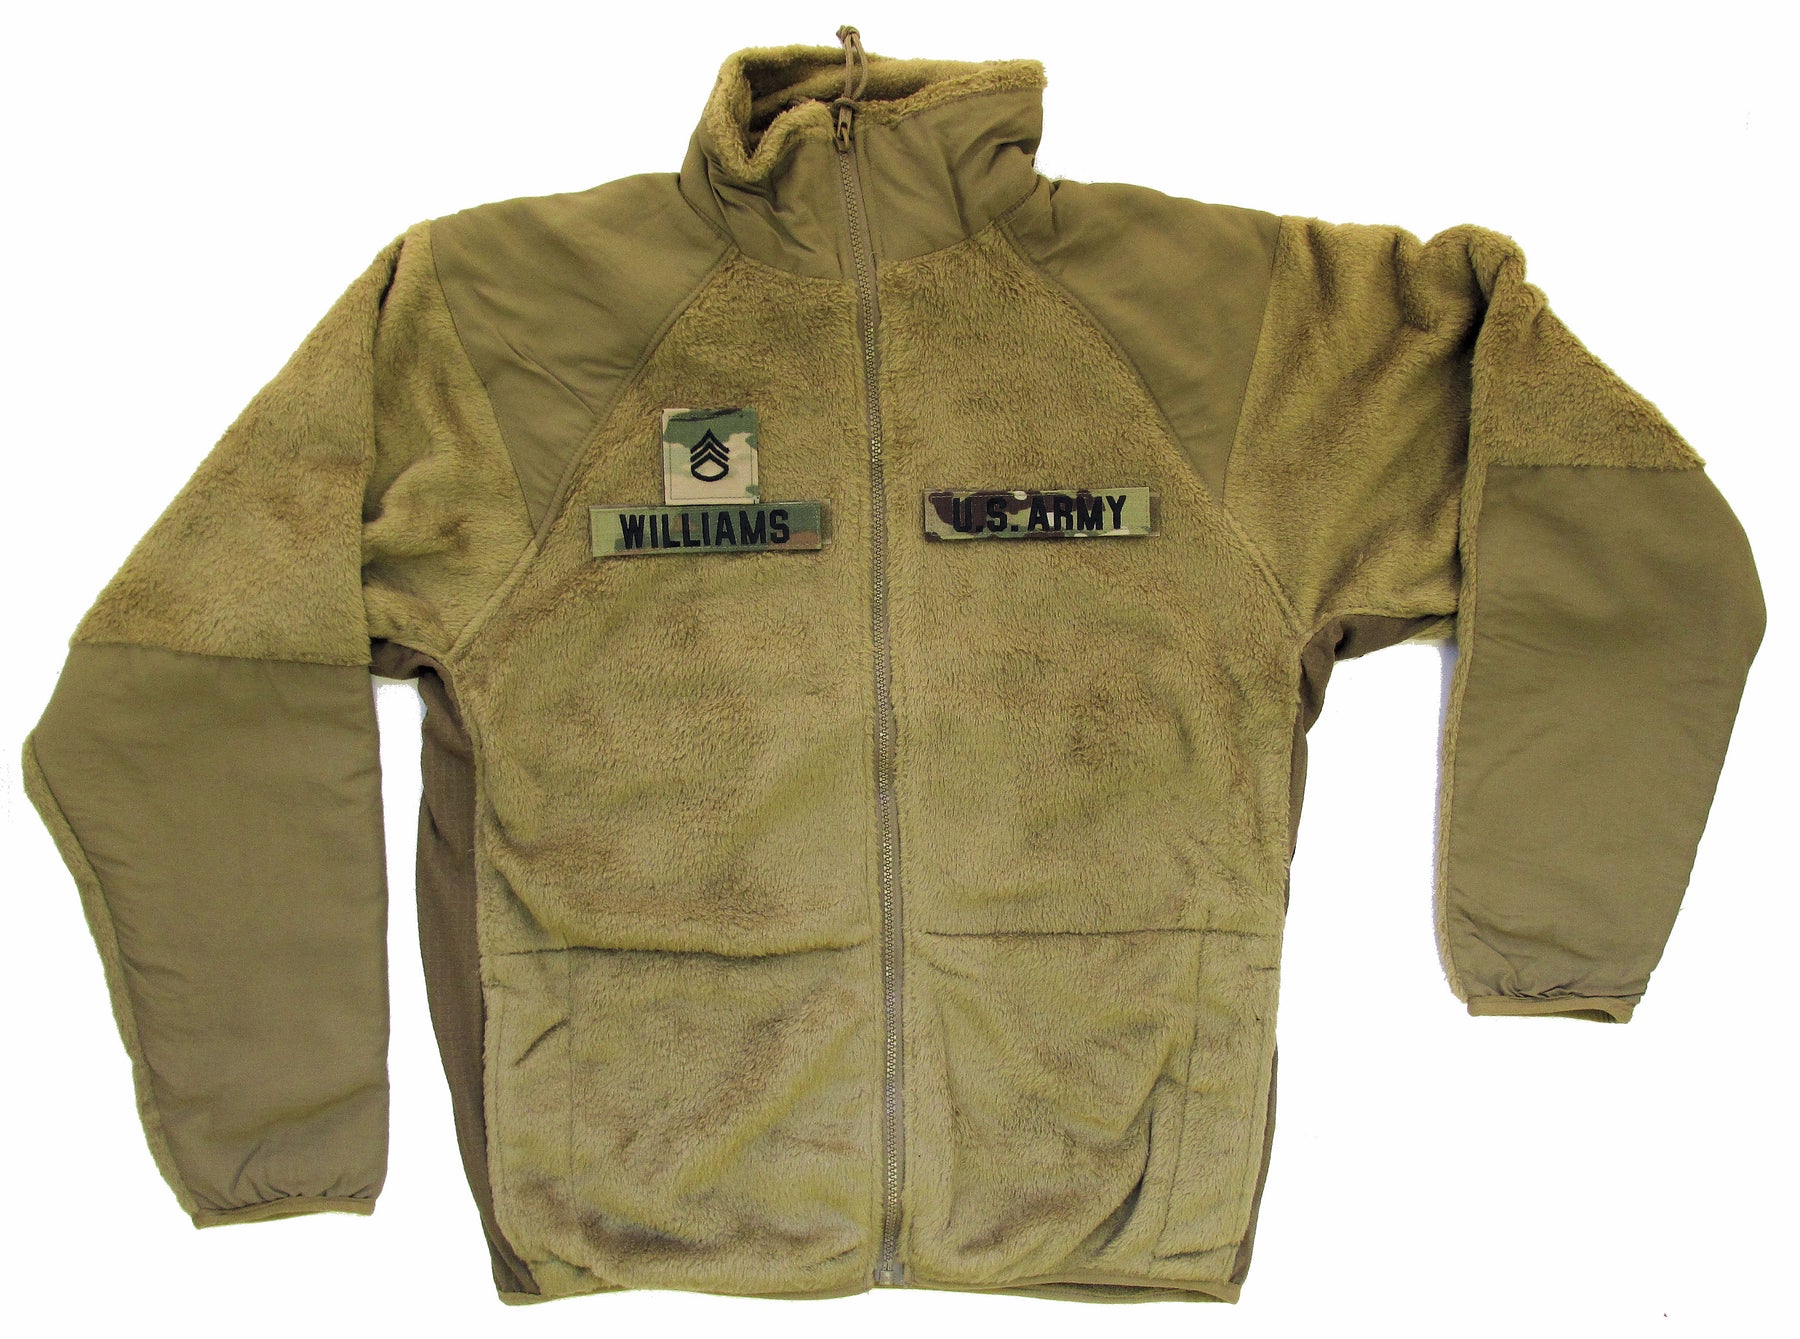 U.S. ARMY Generation III Level 3 ECWCS Fleece Jacket with Insignia